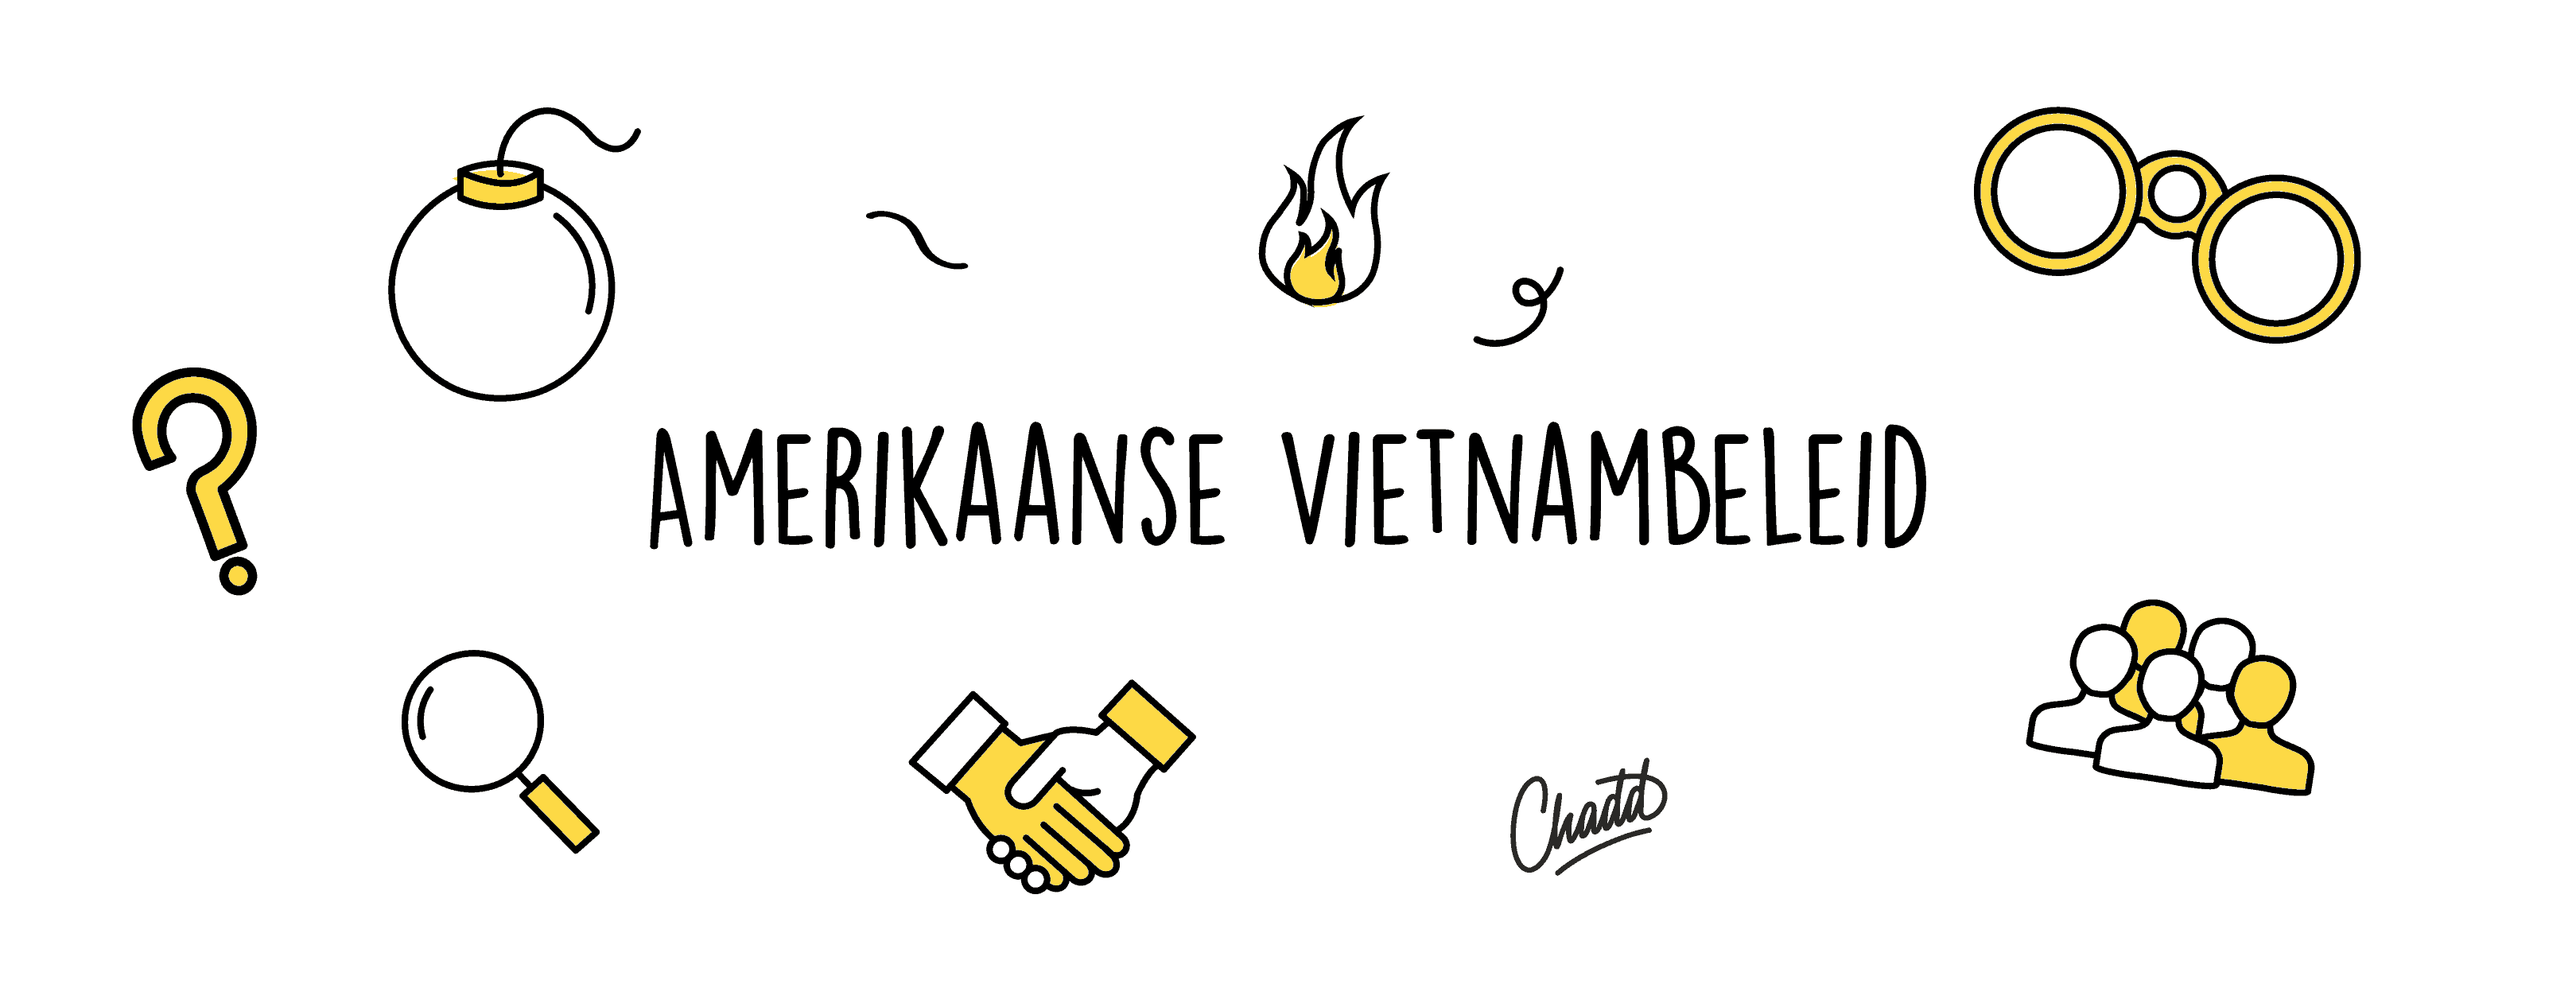 Vietnambeleid